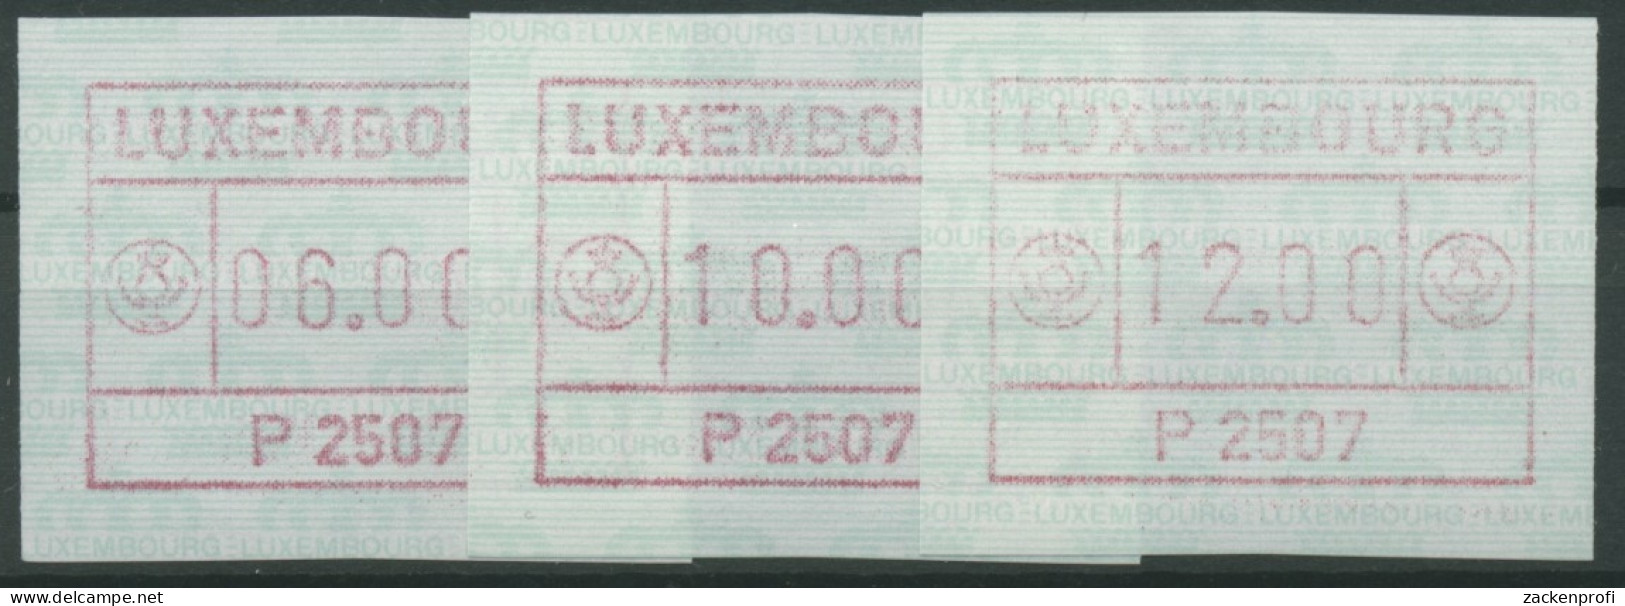 Luxemburg 1983 Automatenmarke 1 Satz 3 Werte Automat P2507 Postfrisch - Postage Labels